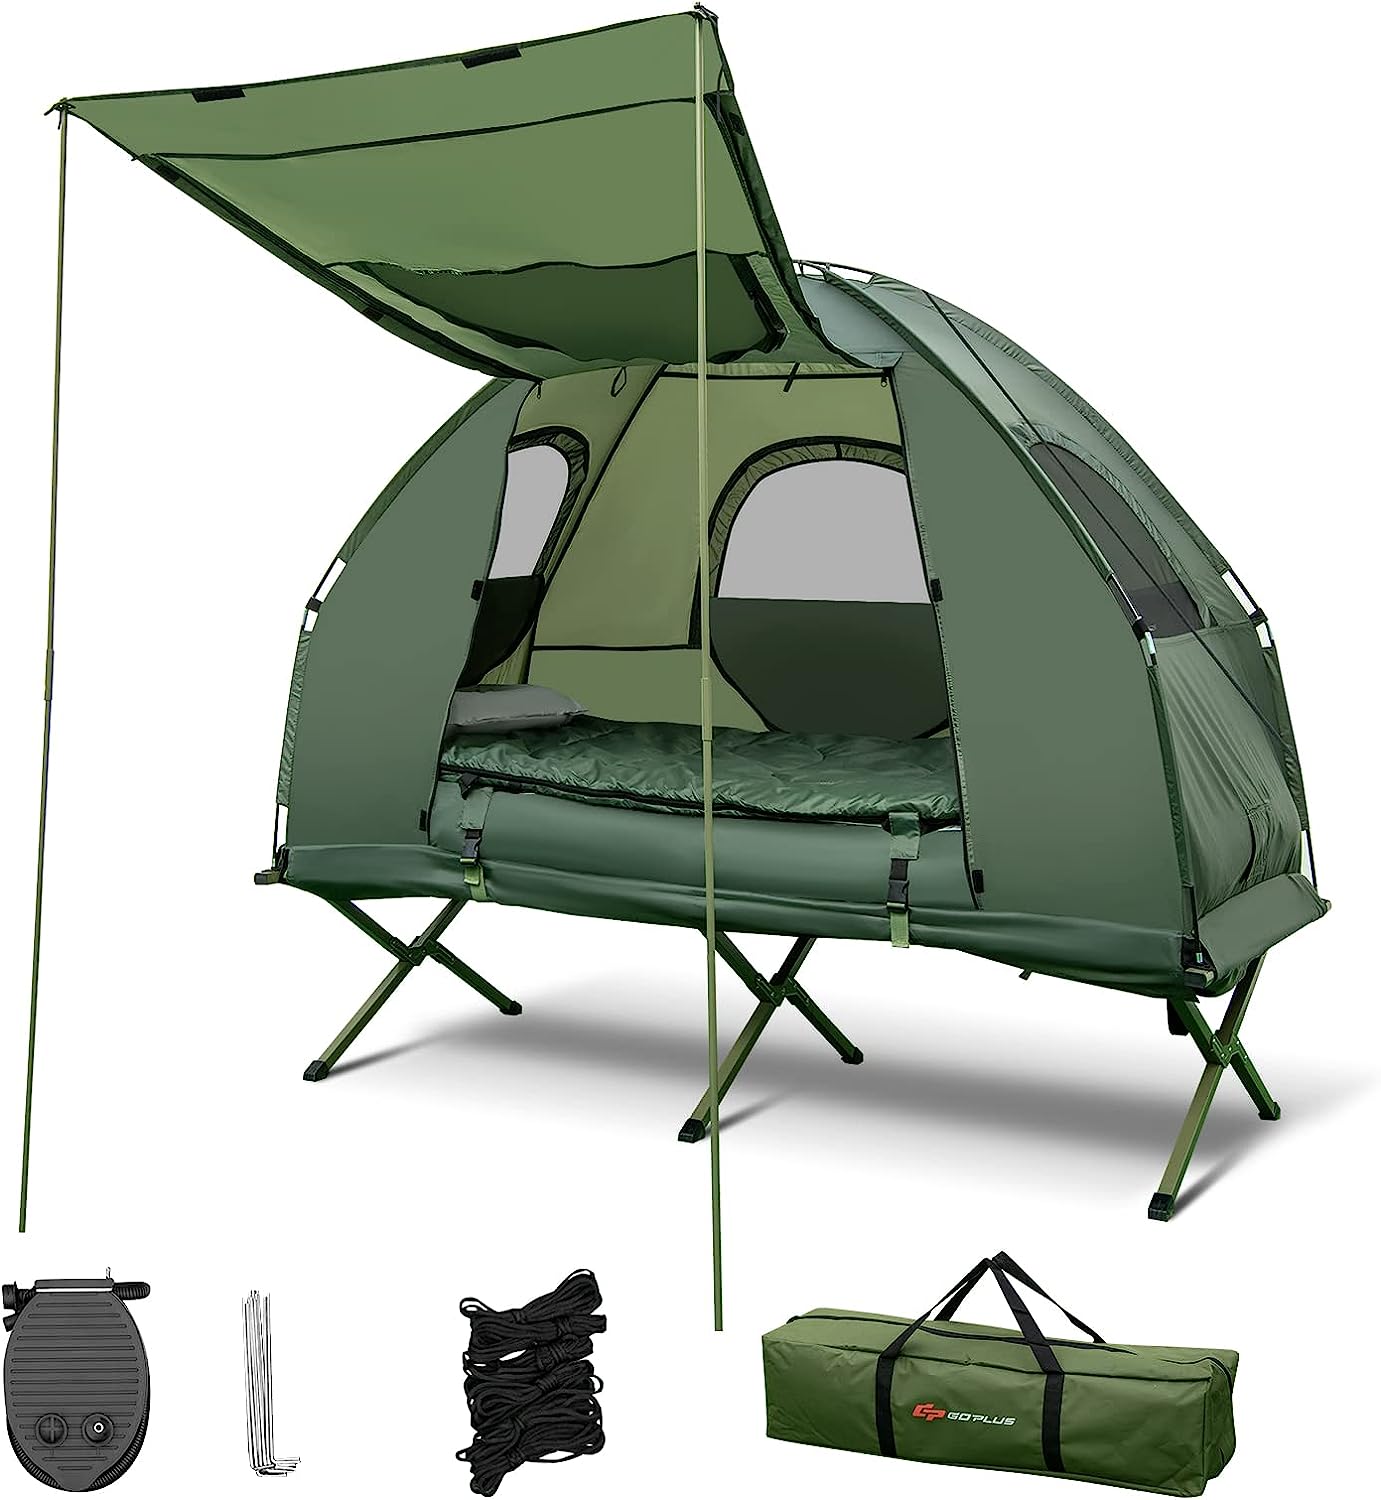 nightcore 1 person cot tent